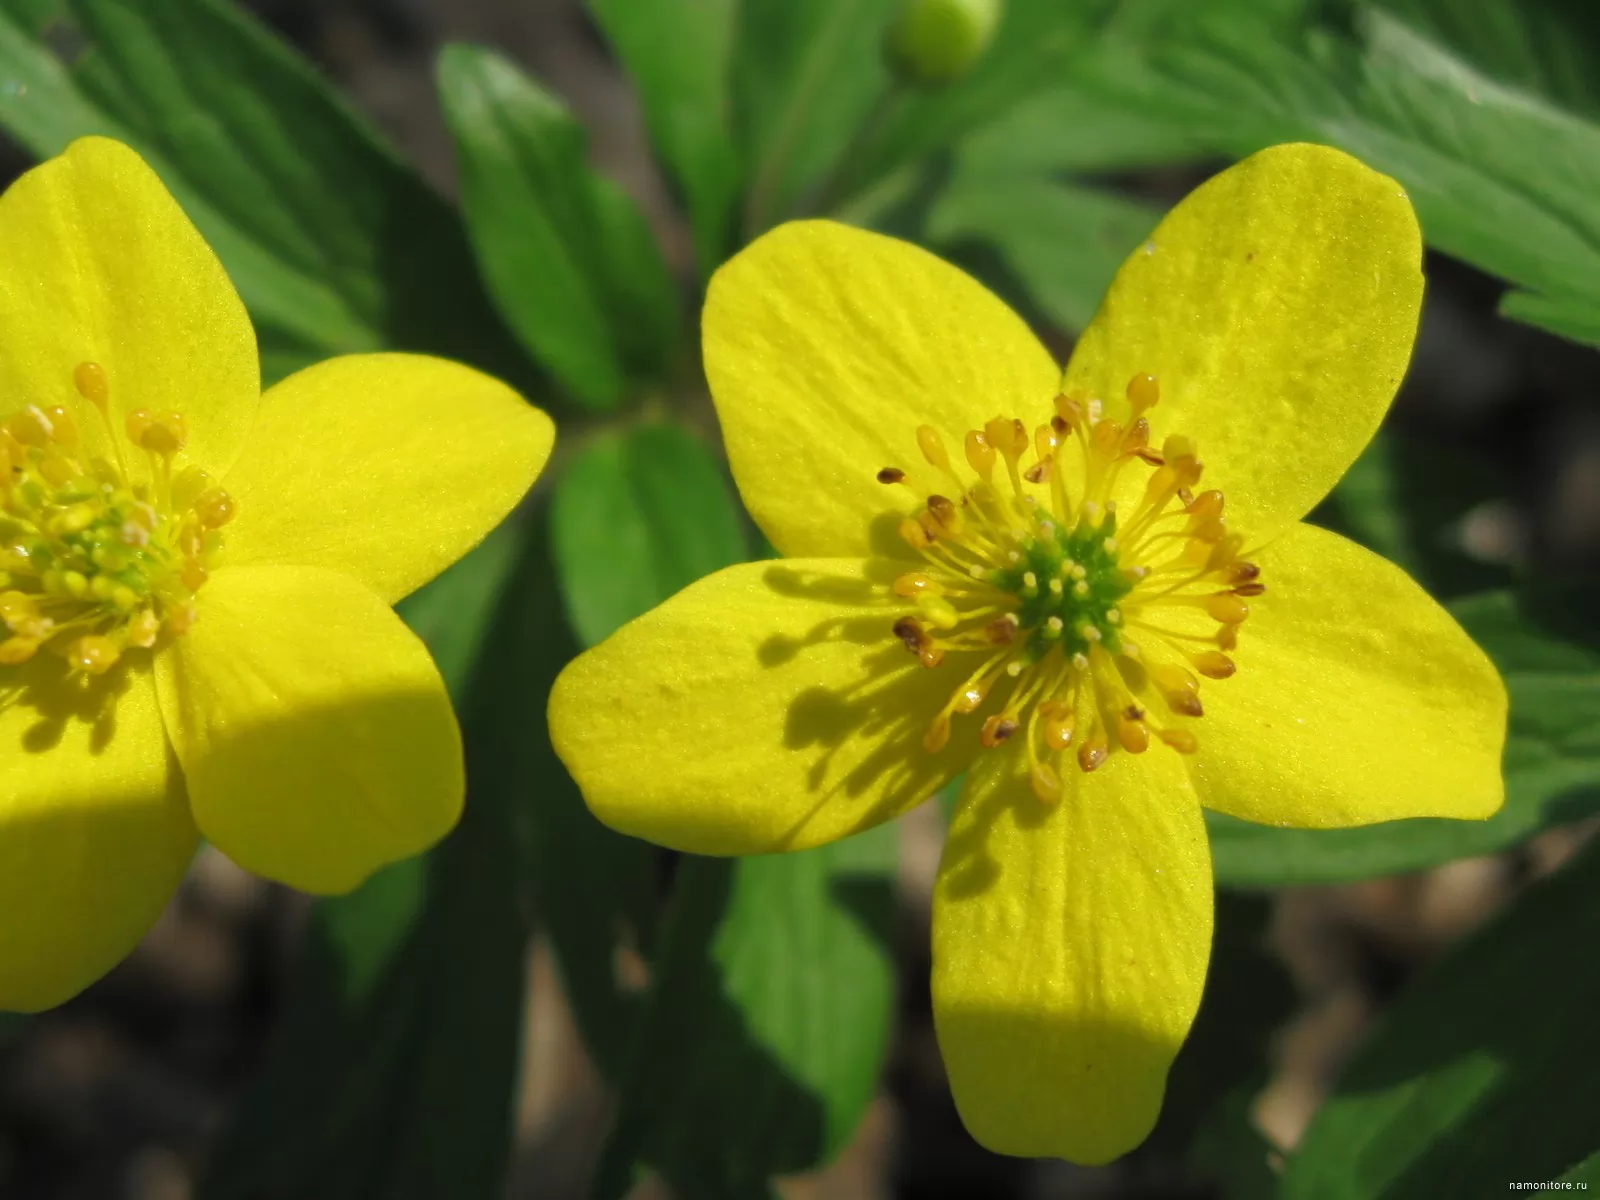 Is gentle-yellow, flowers, yellow x